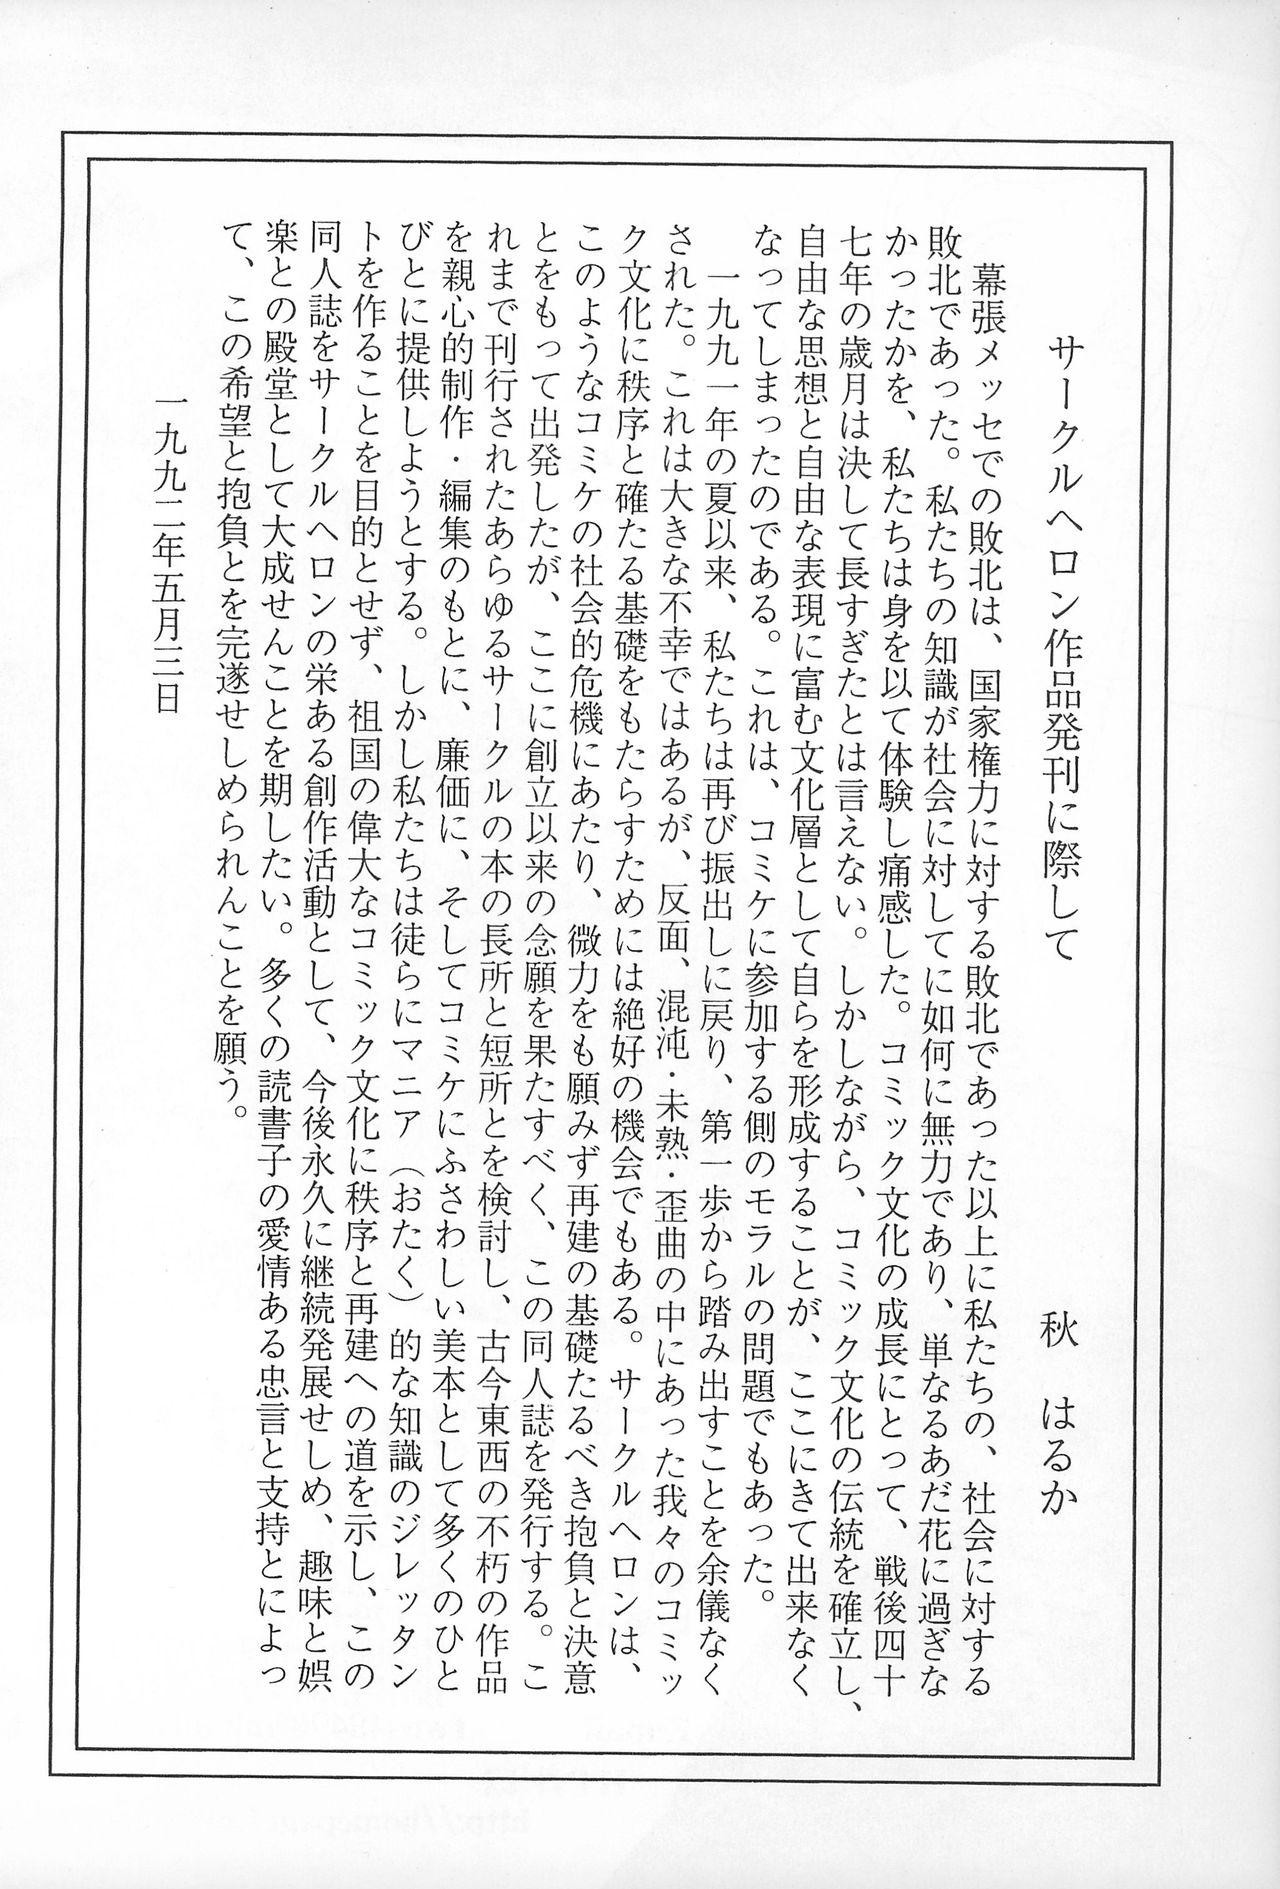 Her Rokushin Gattai - Magewappa 13 - Mon colle knights Deutsch - Page 53